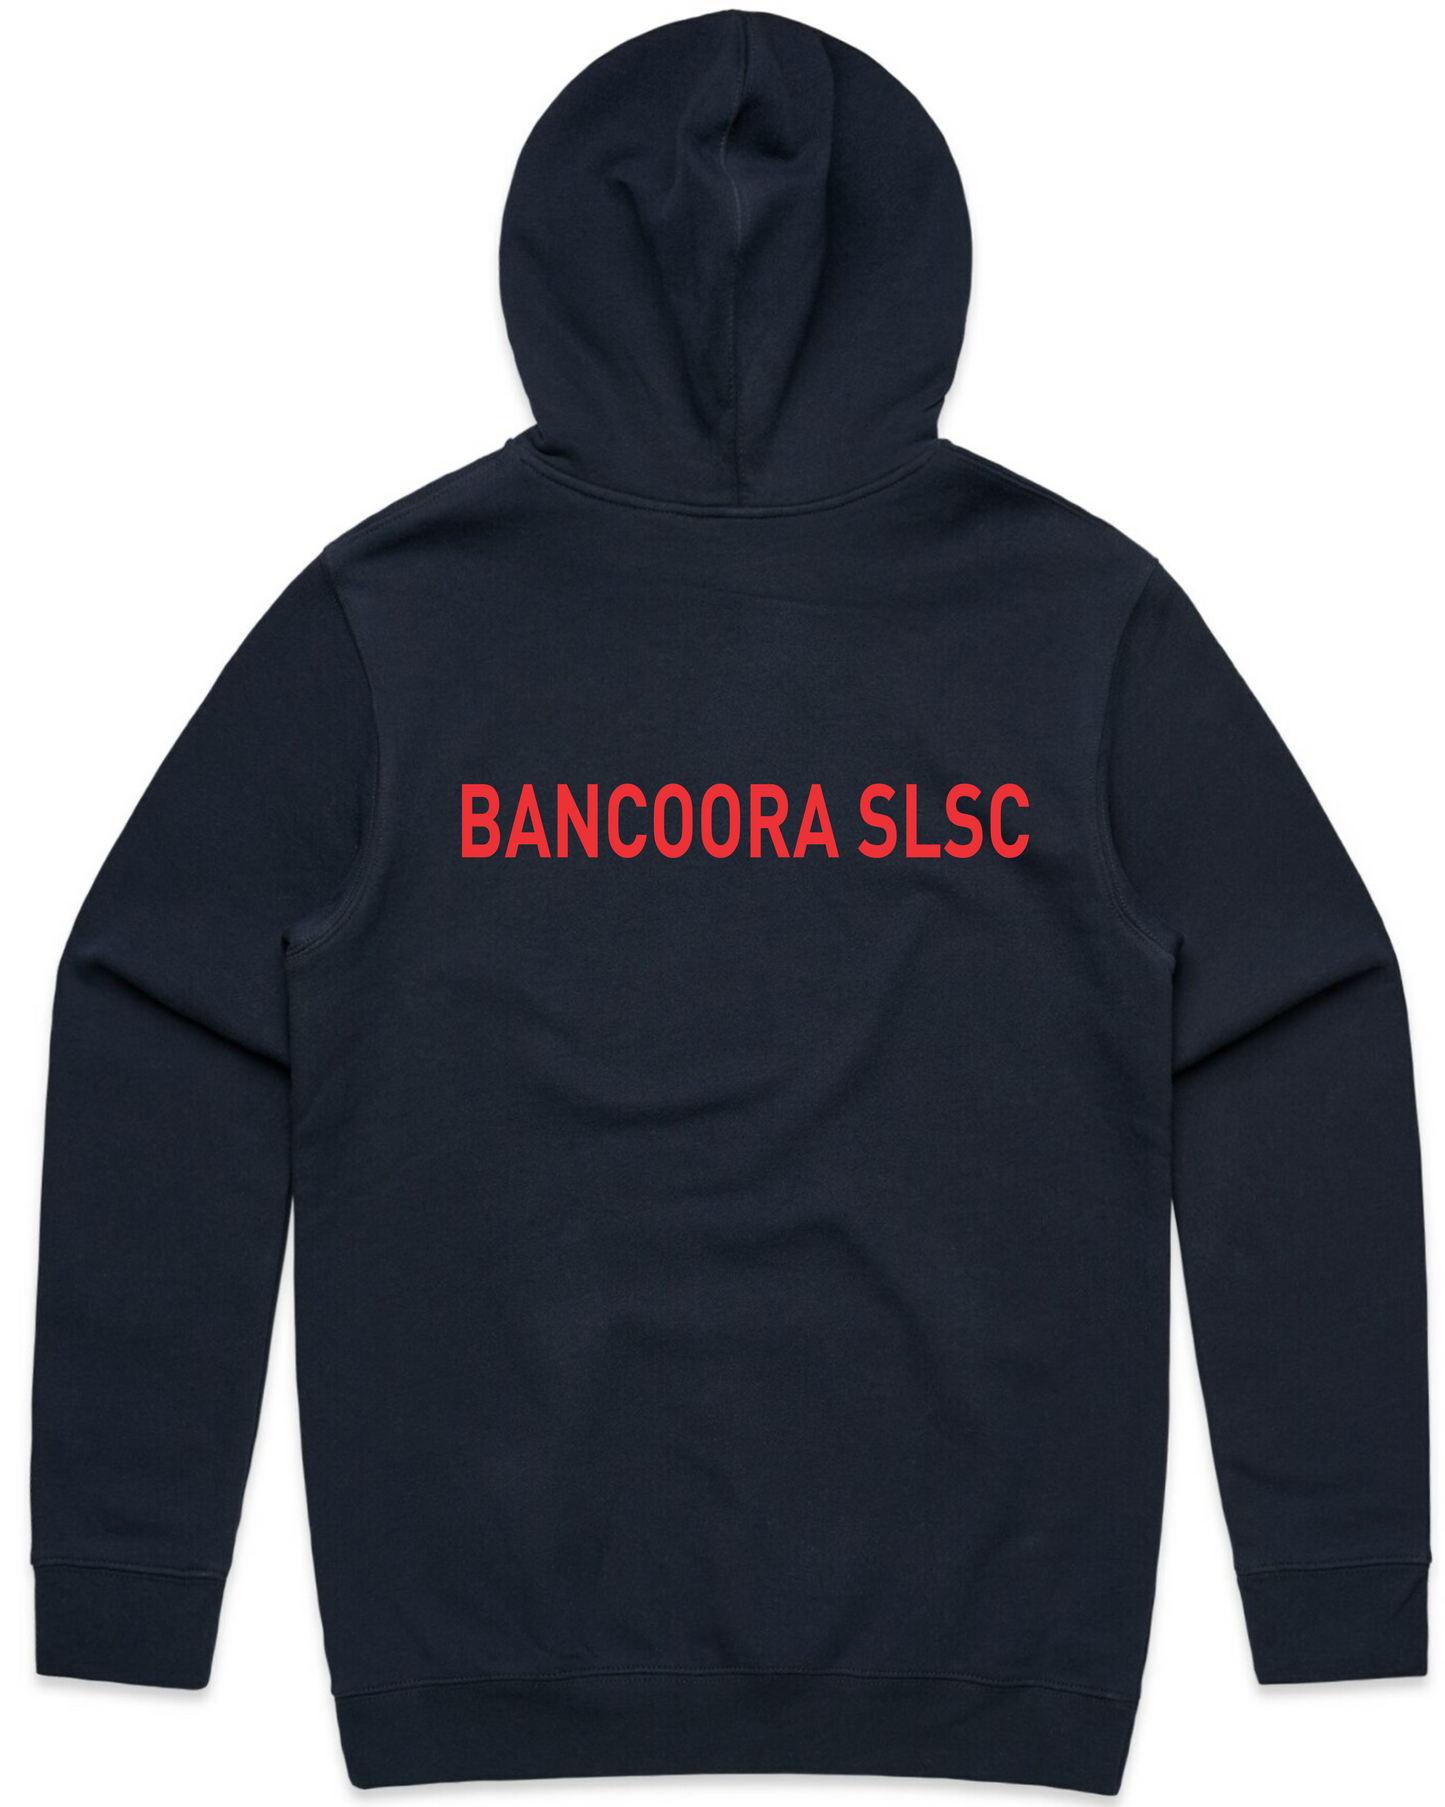 Bancoora SLSC Hoodie - Womens